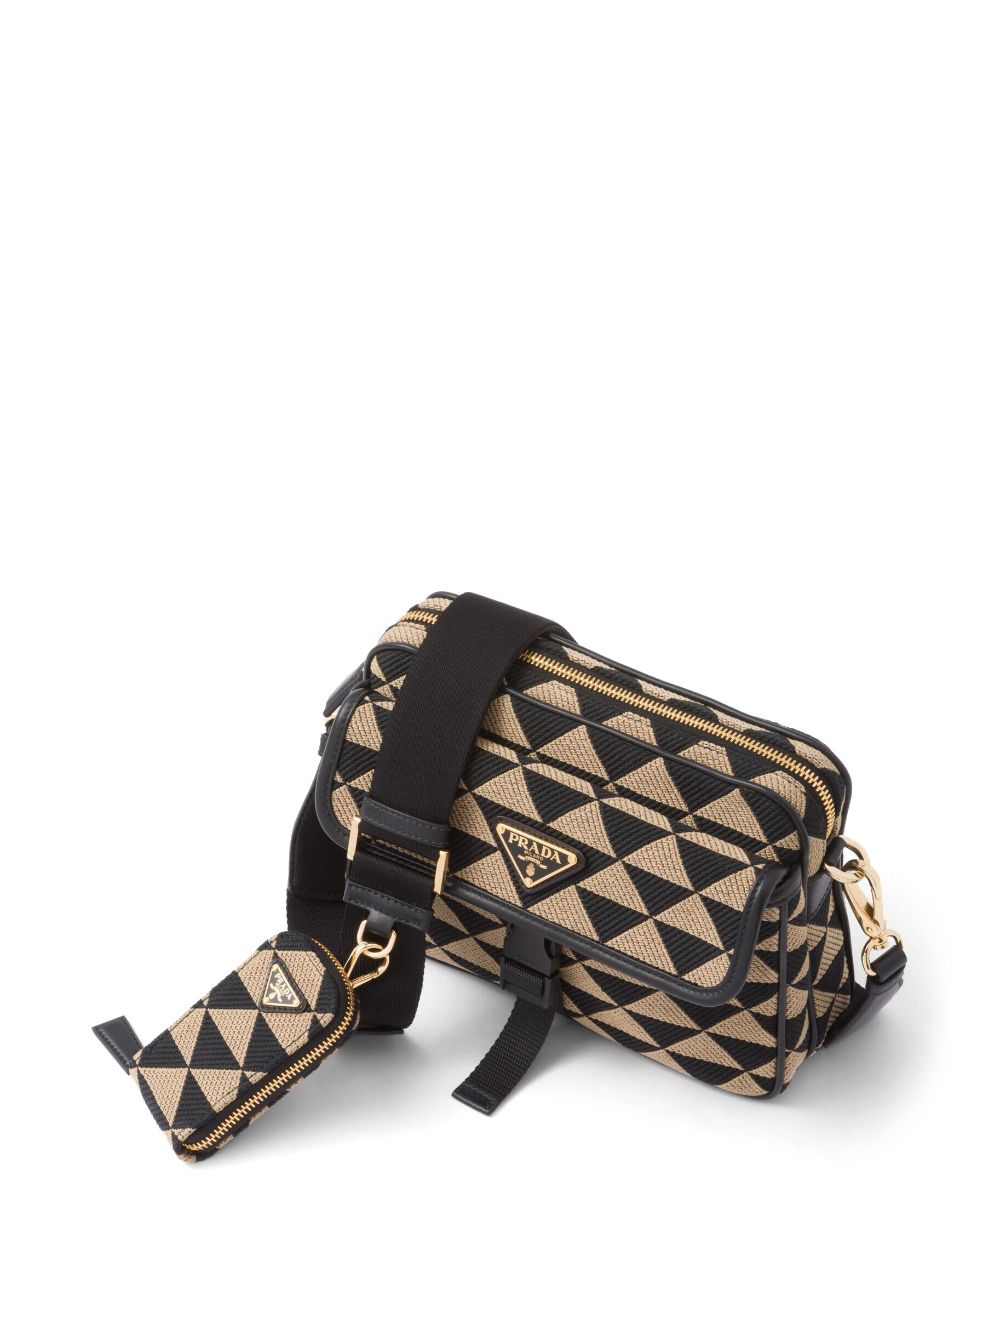 Shop Prada Symbole Embroidered Shoulder Bag In F0y30 Black/beige